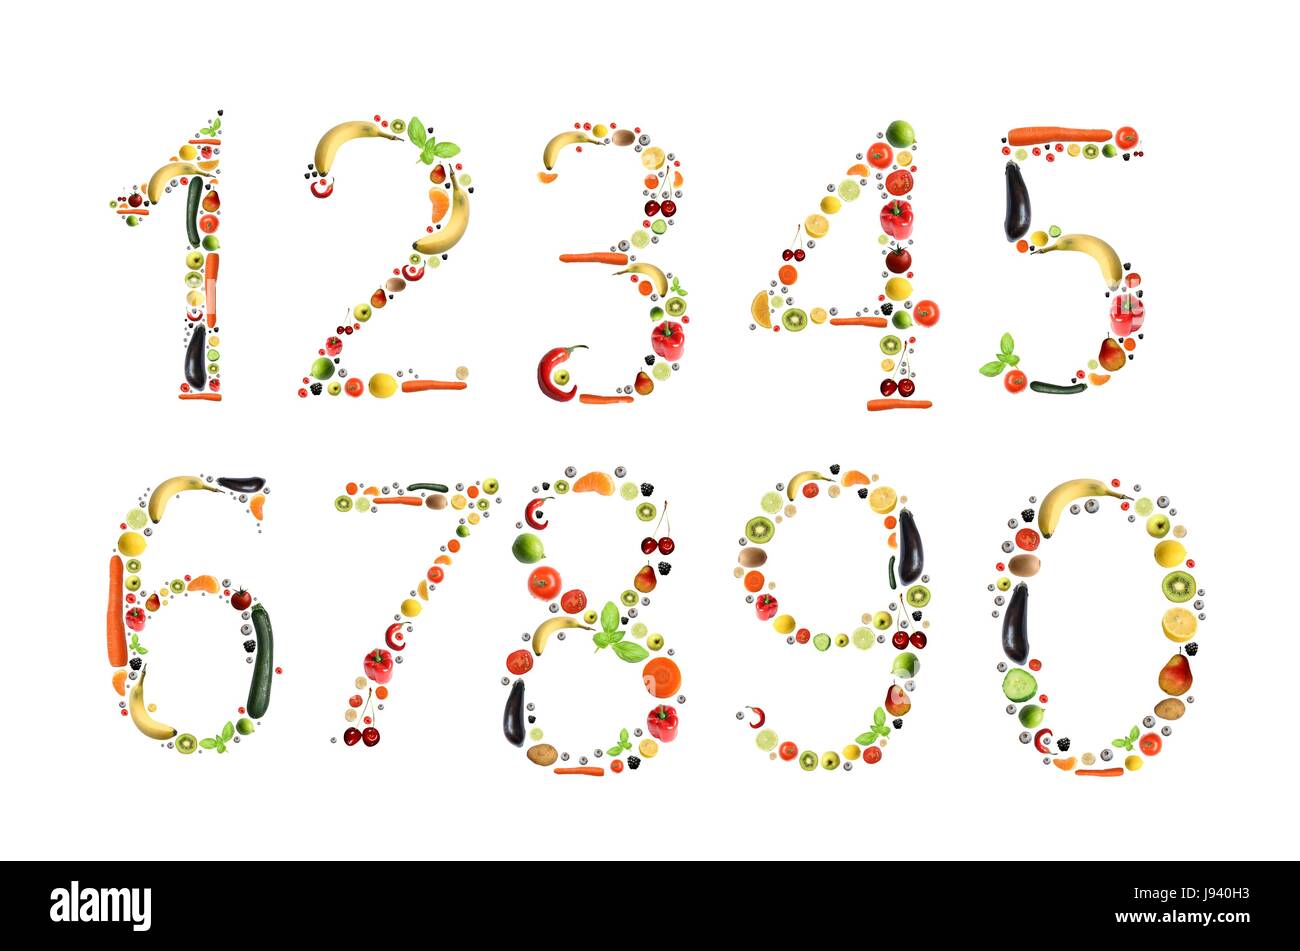 Numeros De Frutas Y Hortalizas Foto Imagen De Stock 143303135 Alamy